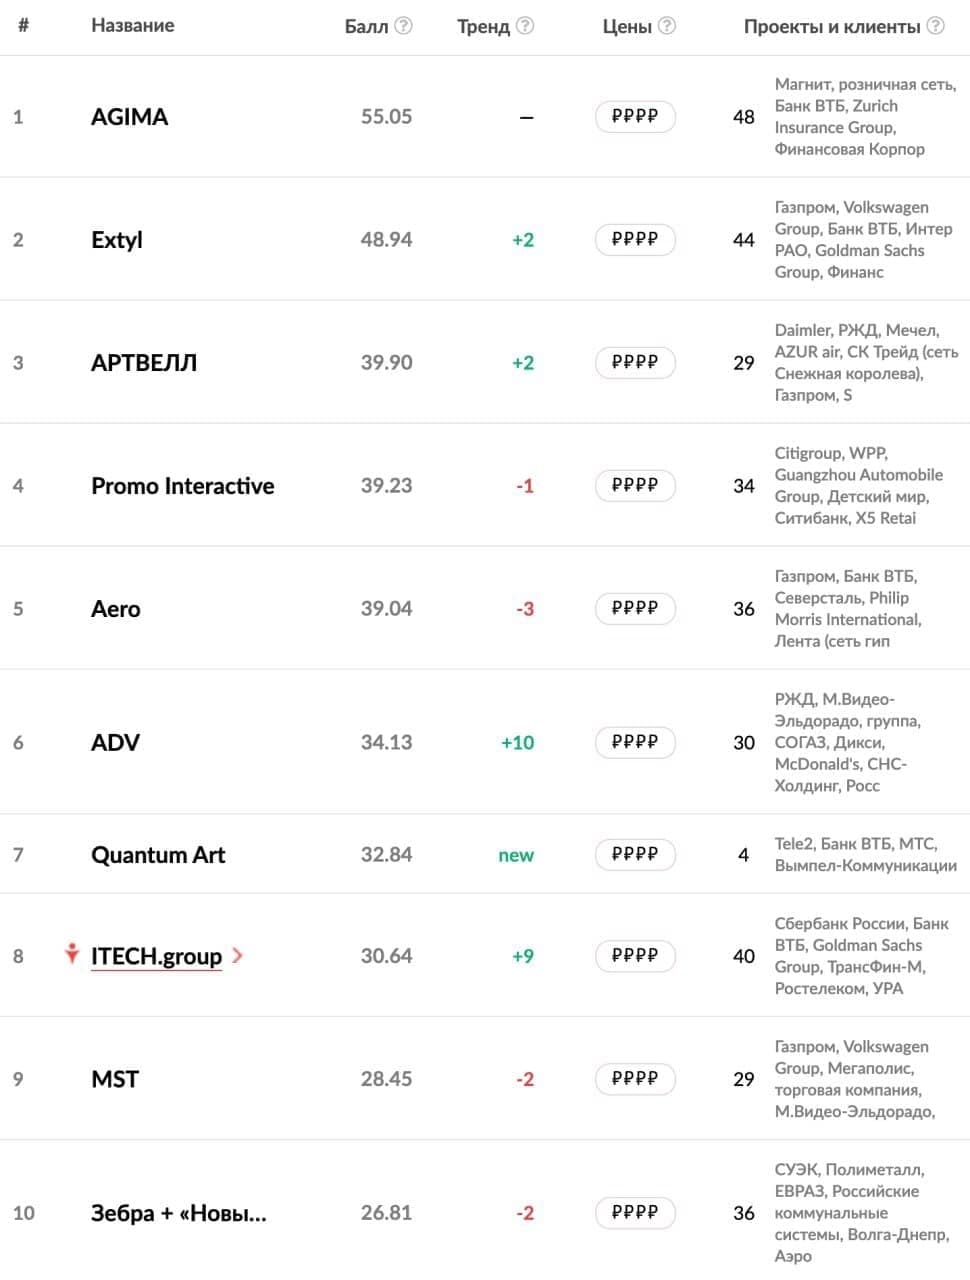 Рейтинг веб-разработчиков, работающих с крупнейшими компаниями - топ-10 за 2020 год